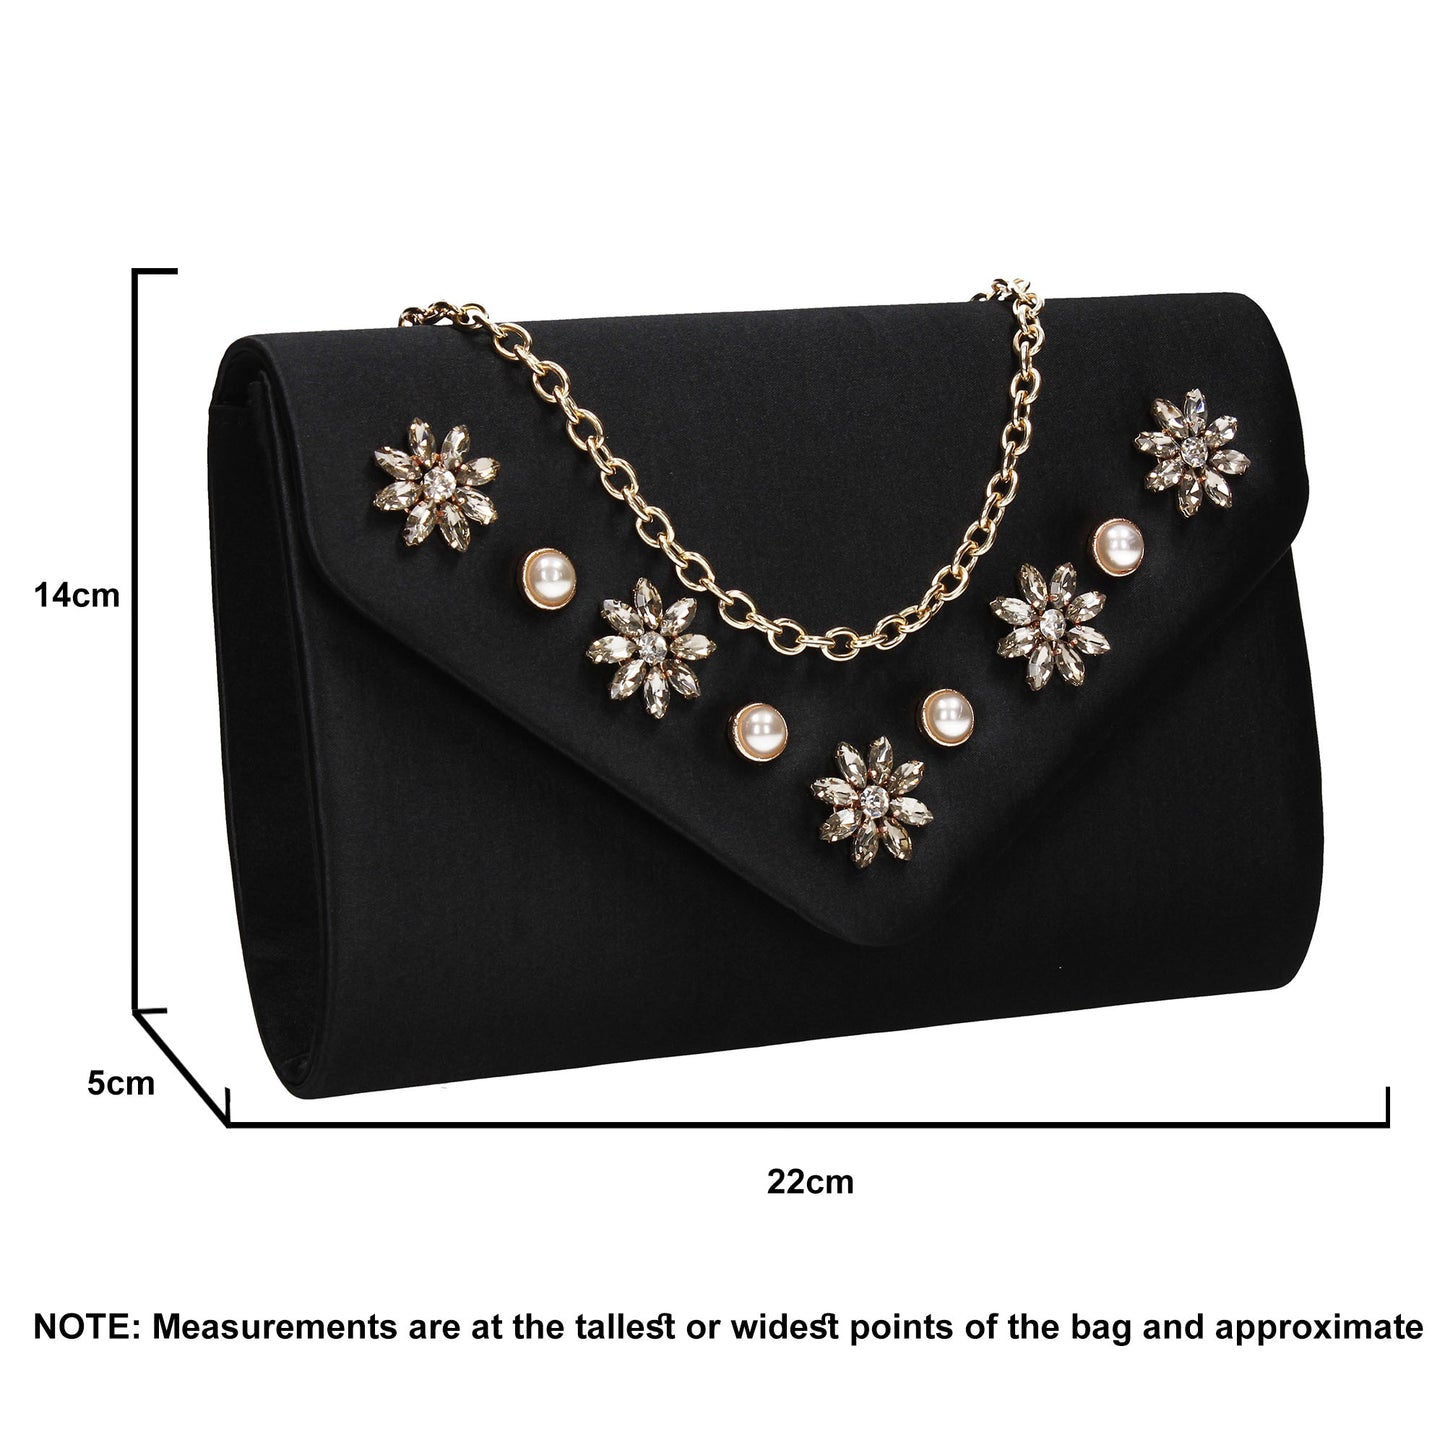 SWANKYSWANS Leila Clutch Bag Black Cute Cheap Clutch Bag For Weddings School and Work